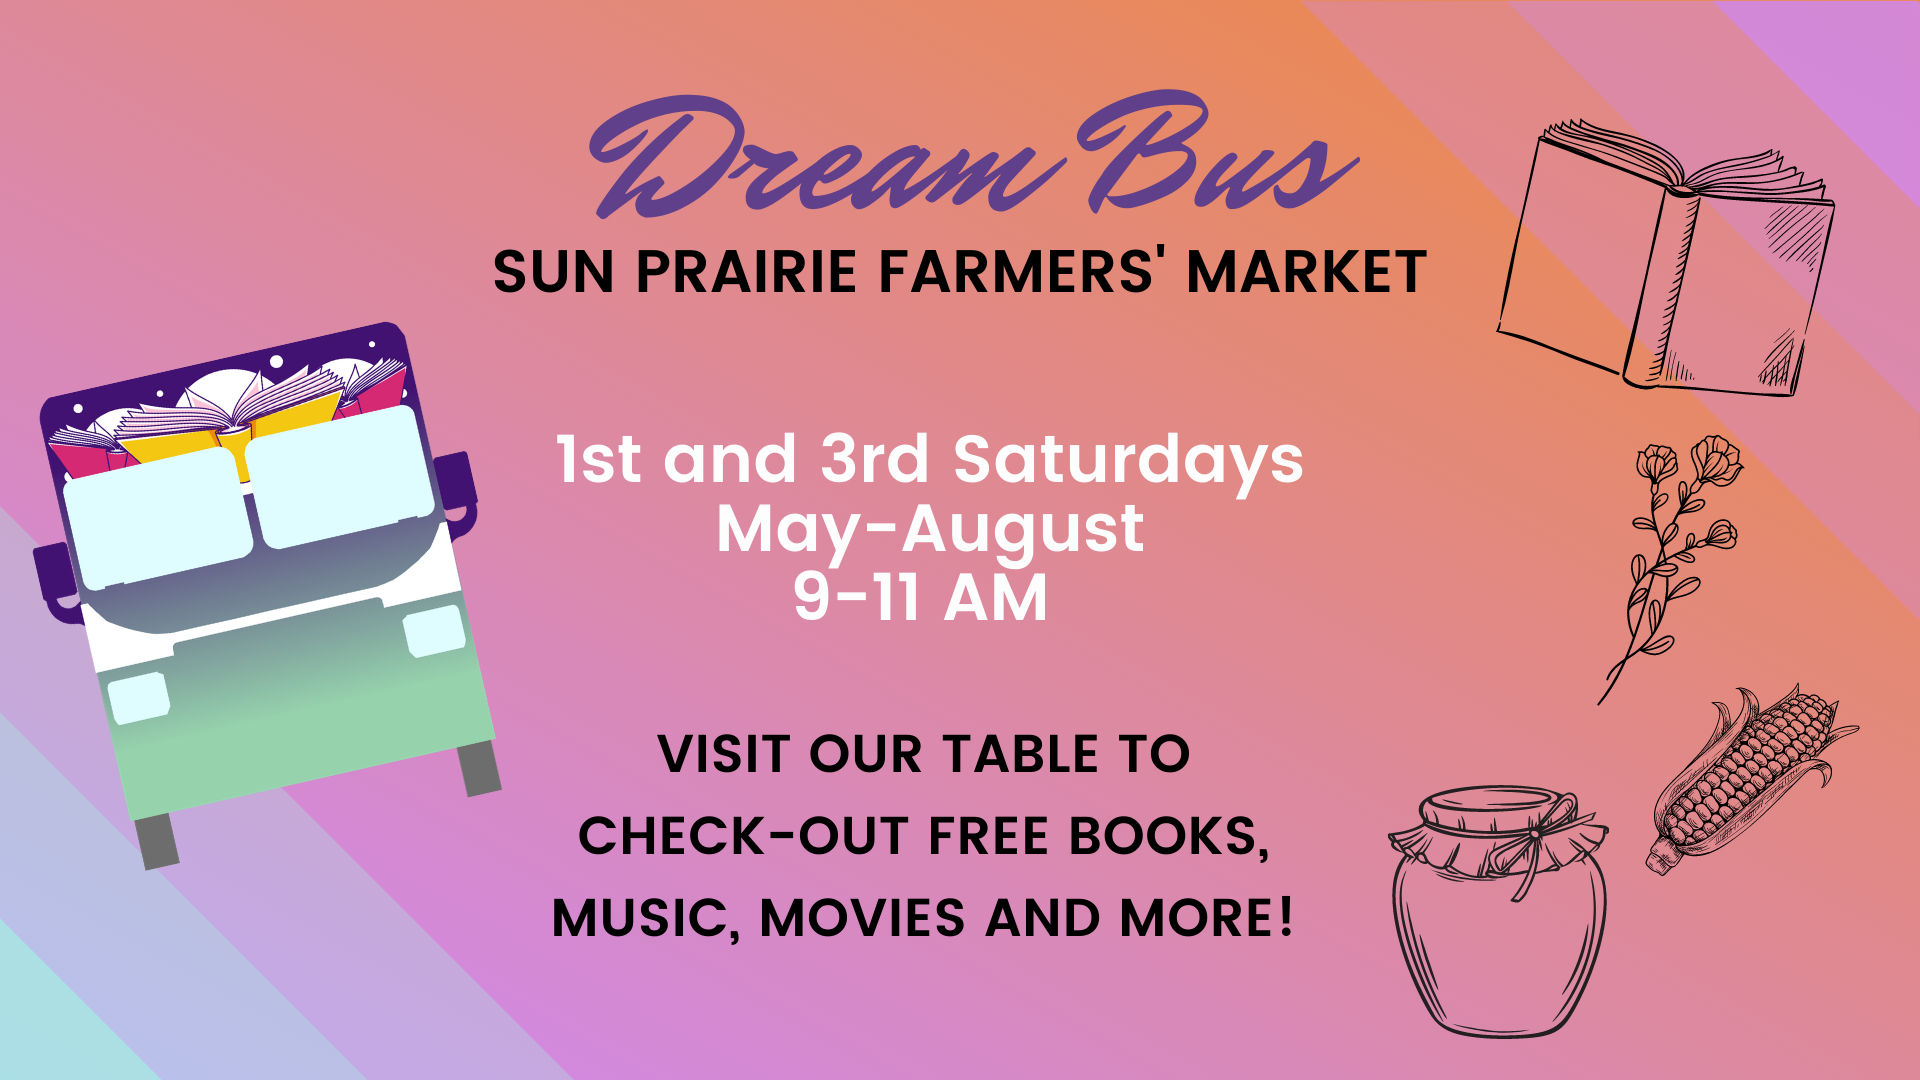 Visit the Dream Bus at the Sun Prairie Farmers' Market